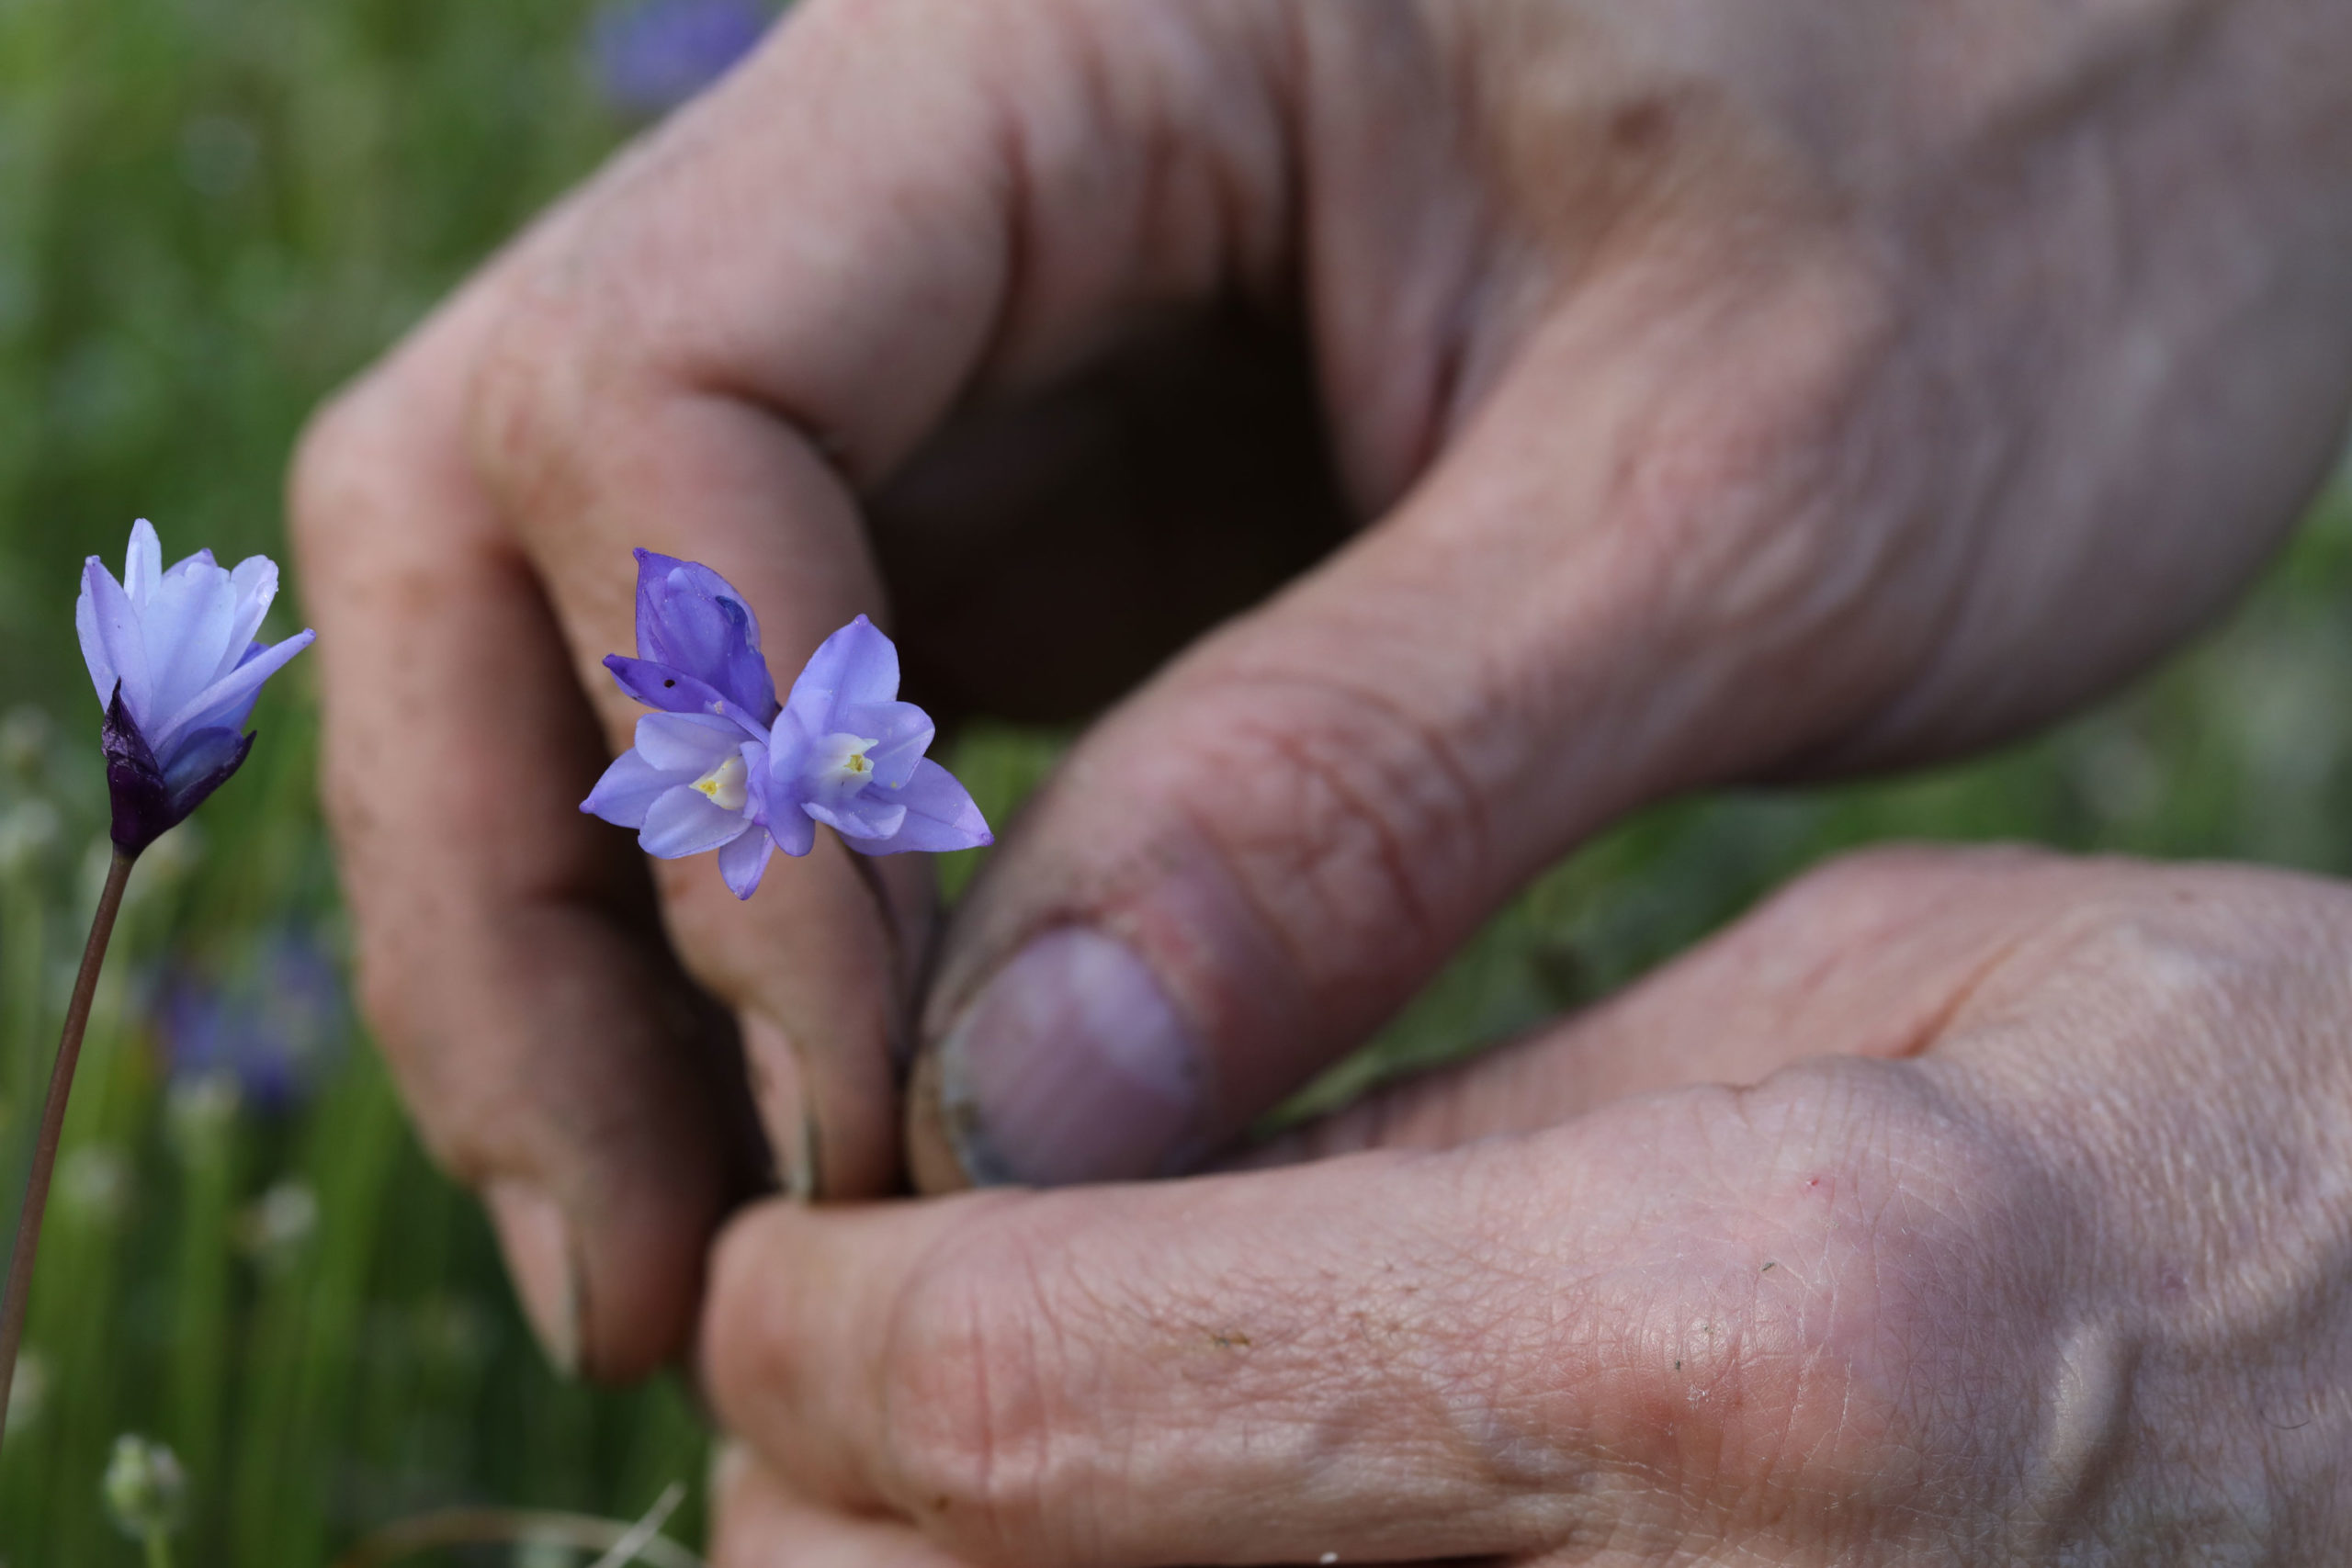 Hands picking a flower